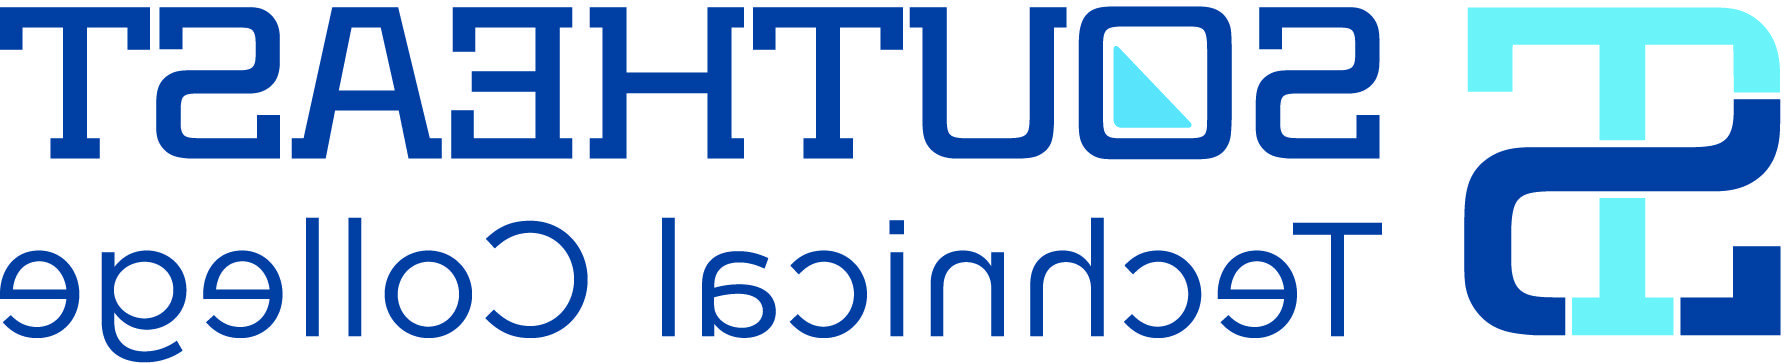 东南 Technical College logo 和 monogram